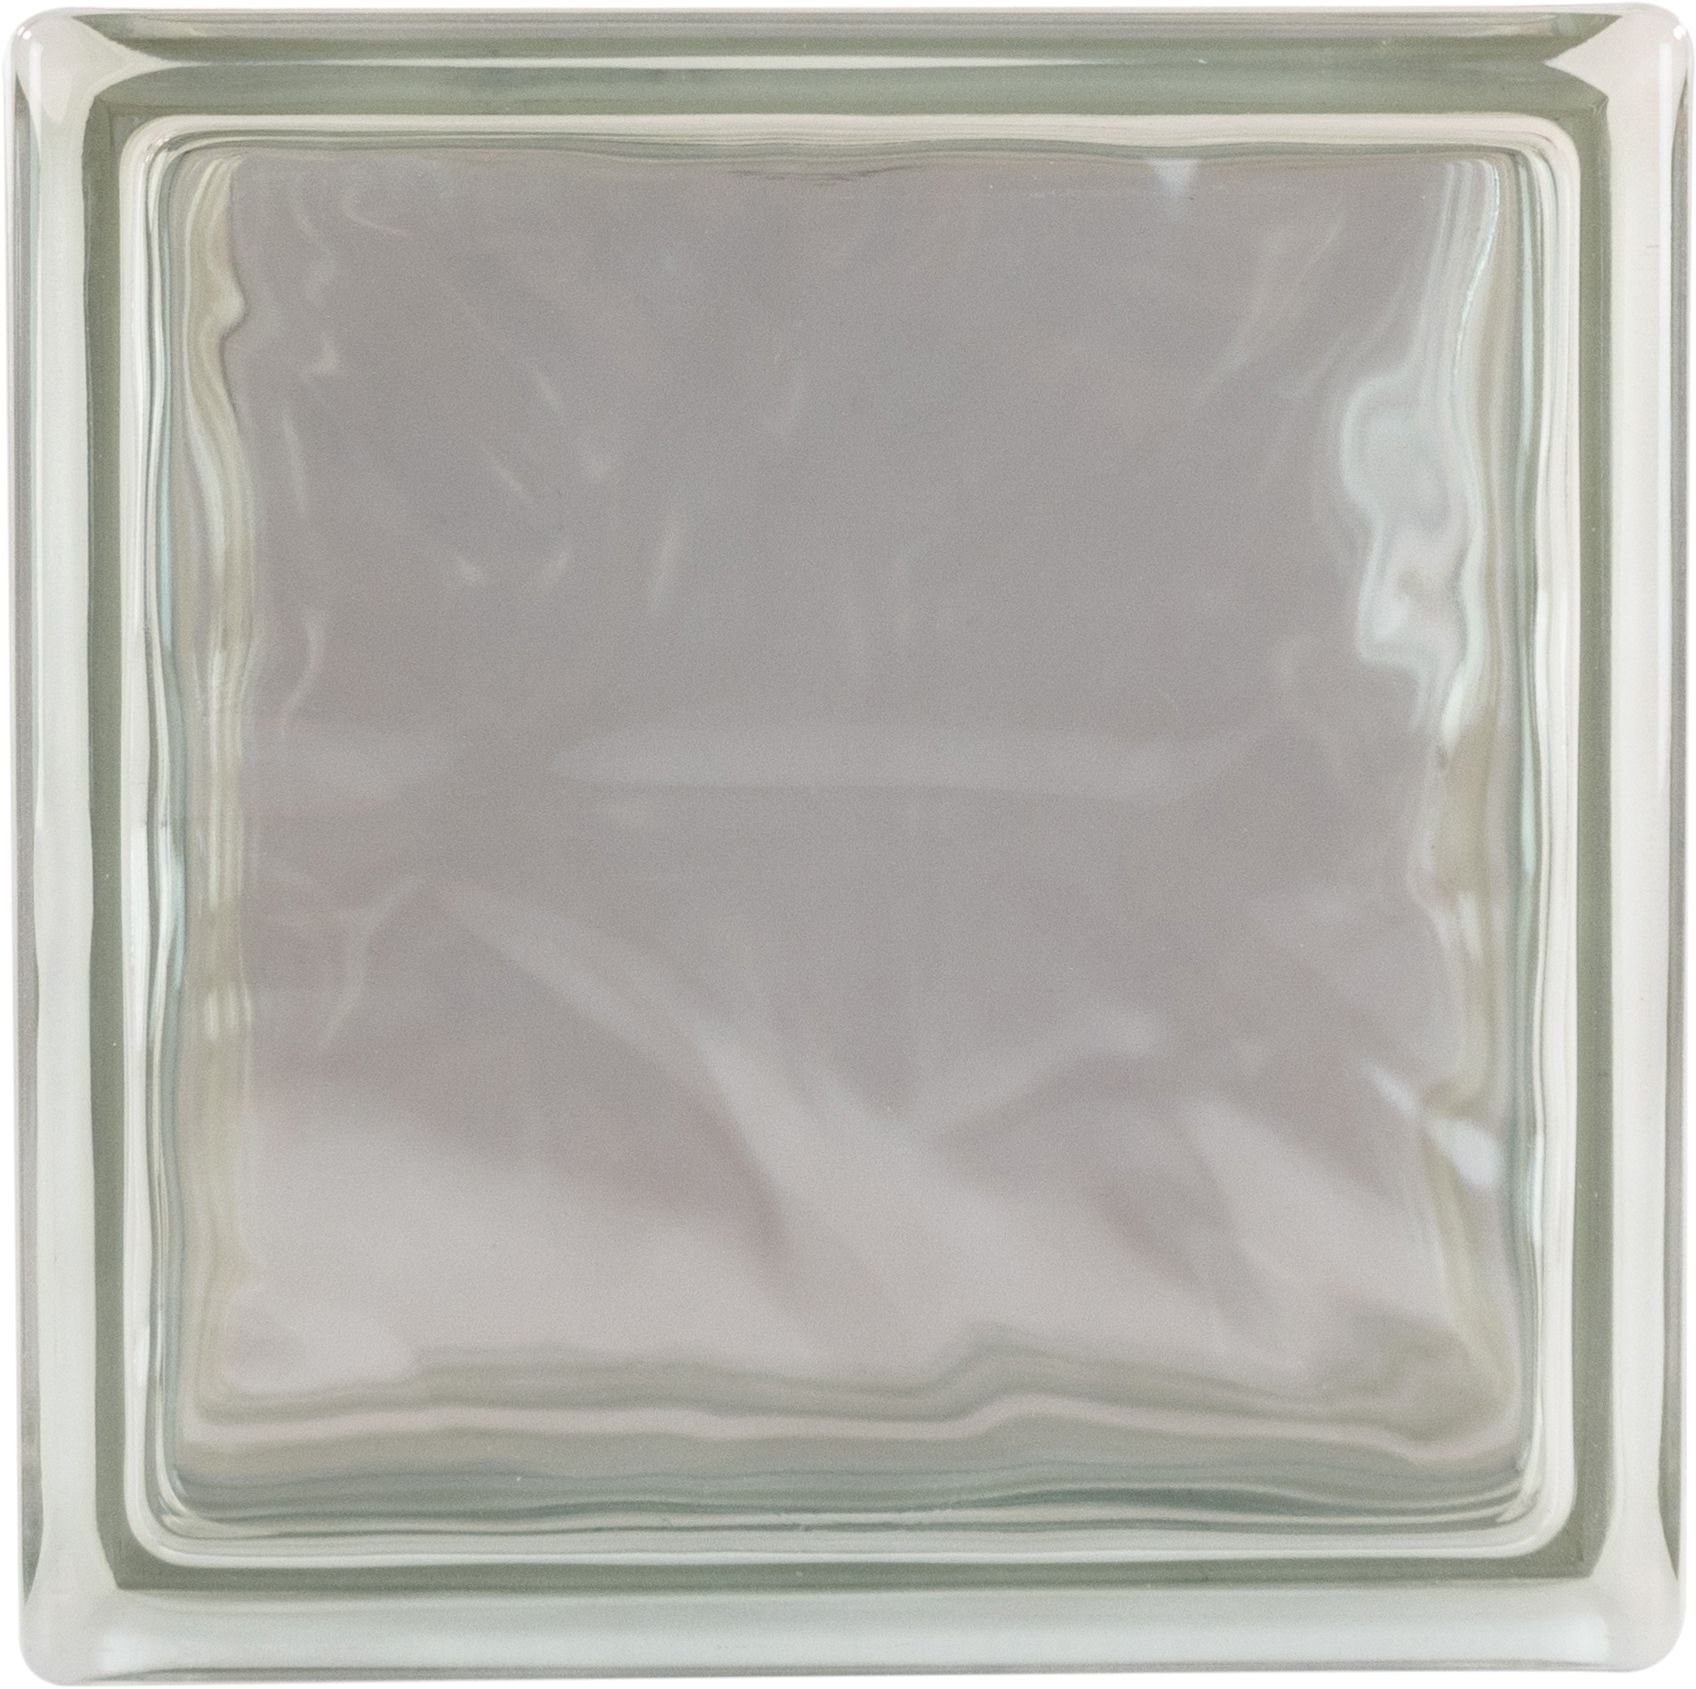 THERMO BLOCK Plus Glasbaustein Wolke klar, 19x19x13,5 cm, Wärmedämmung: Ug 0,8